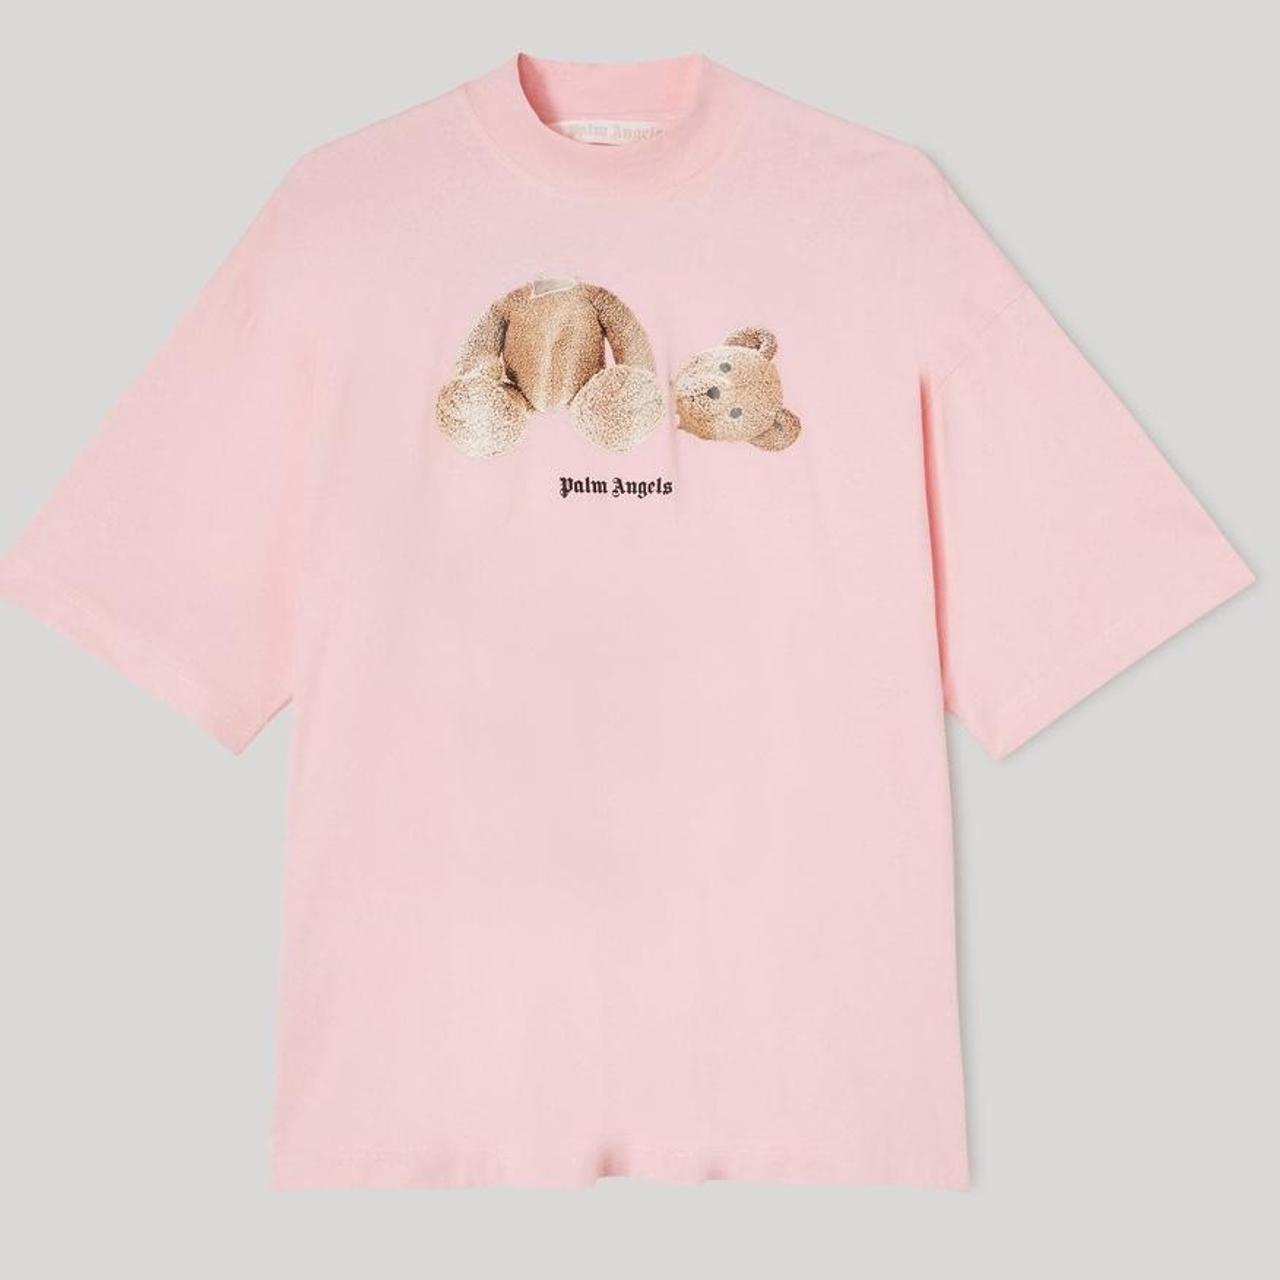 Palm Angels Women's Pink T-shirt (3)